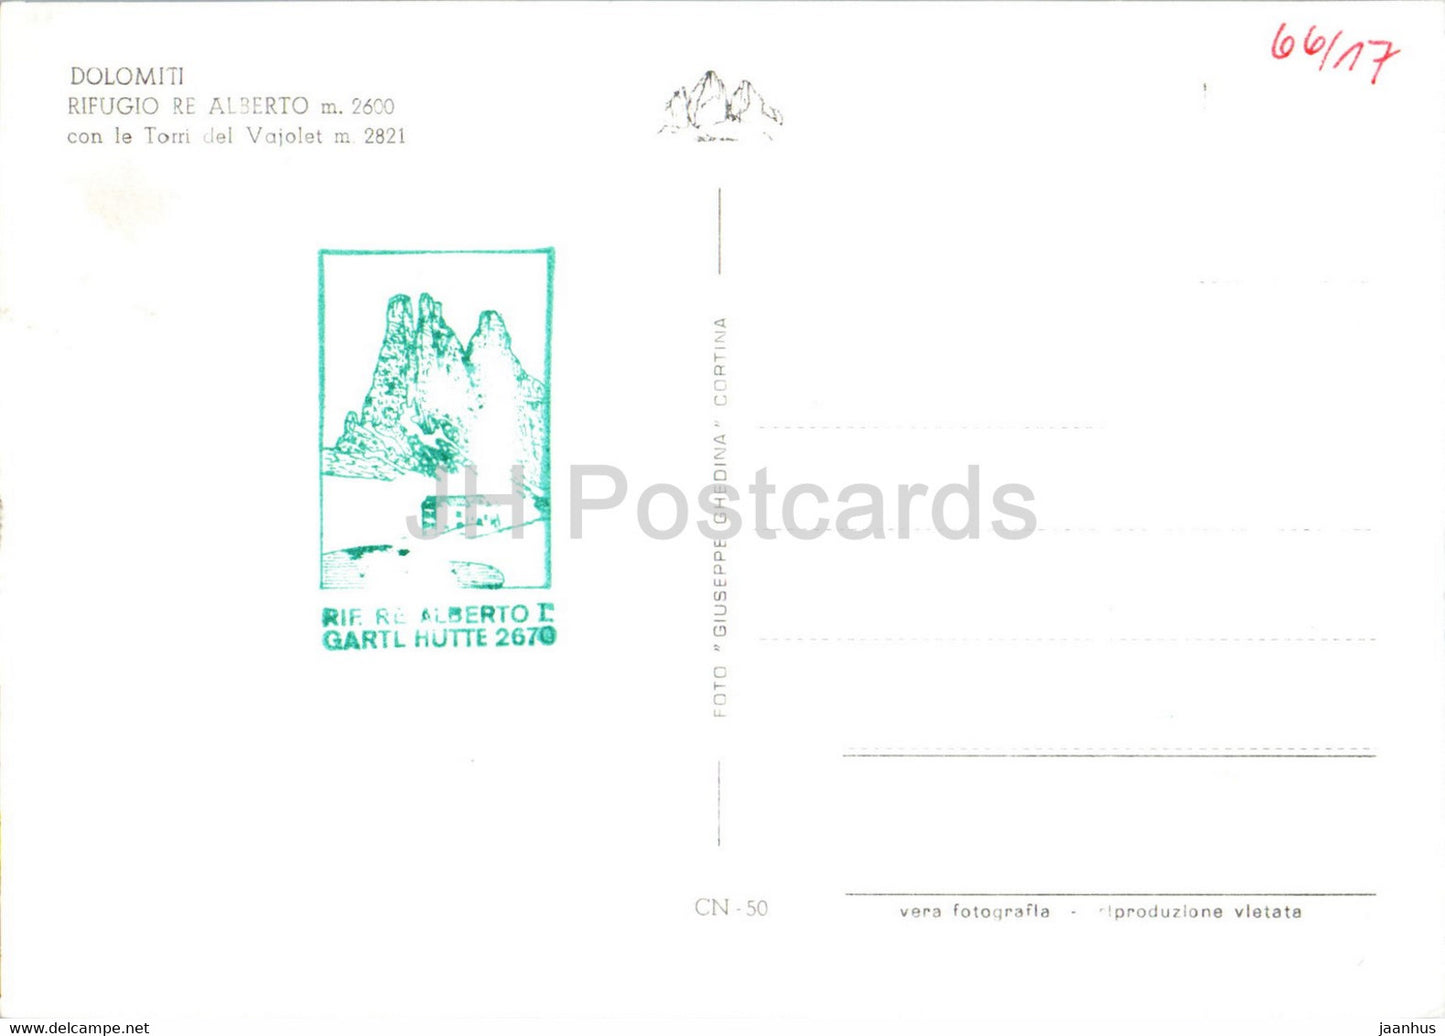 Dolomiti - Rifugio Re Alberto con le Torri del Vajolet - old postcard - Italy - unused